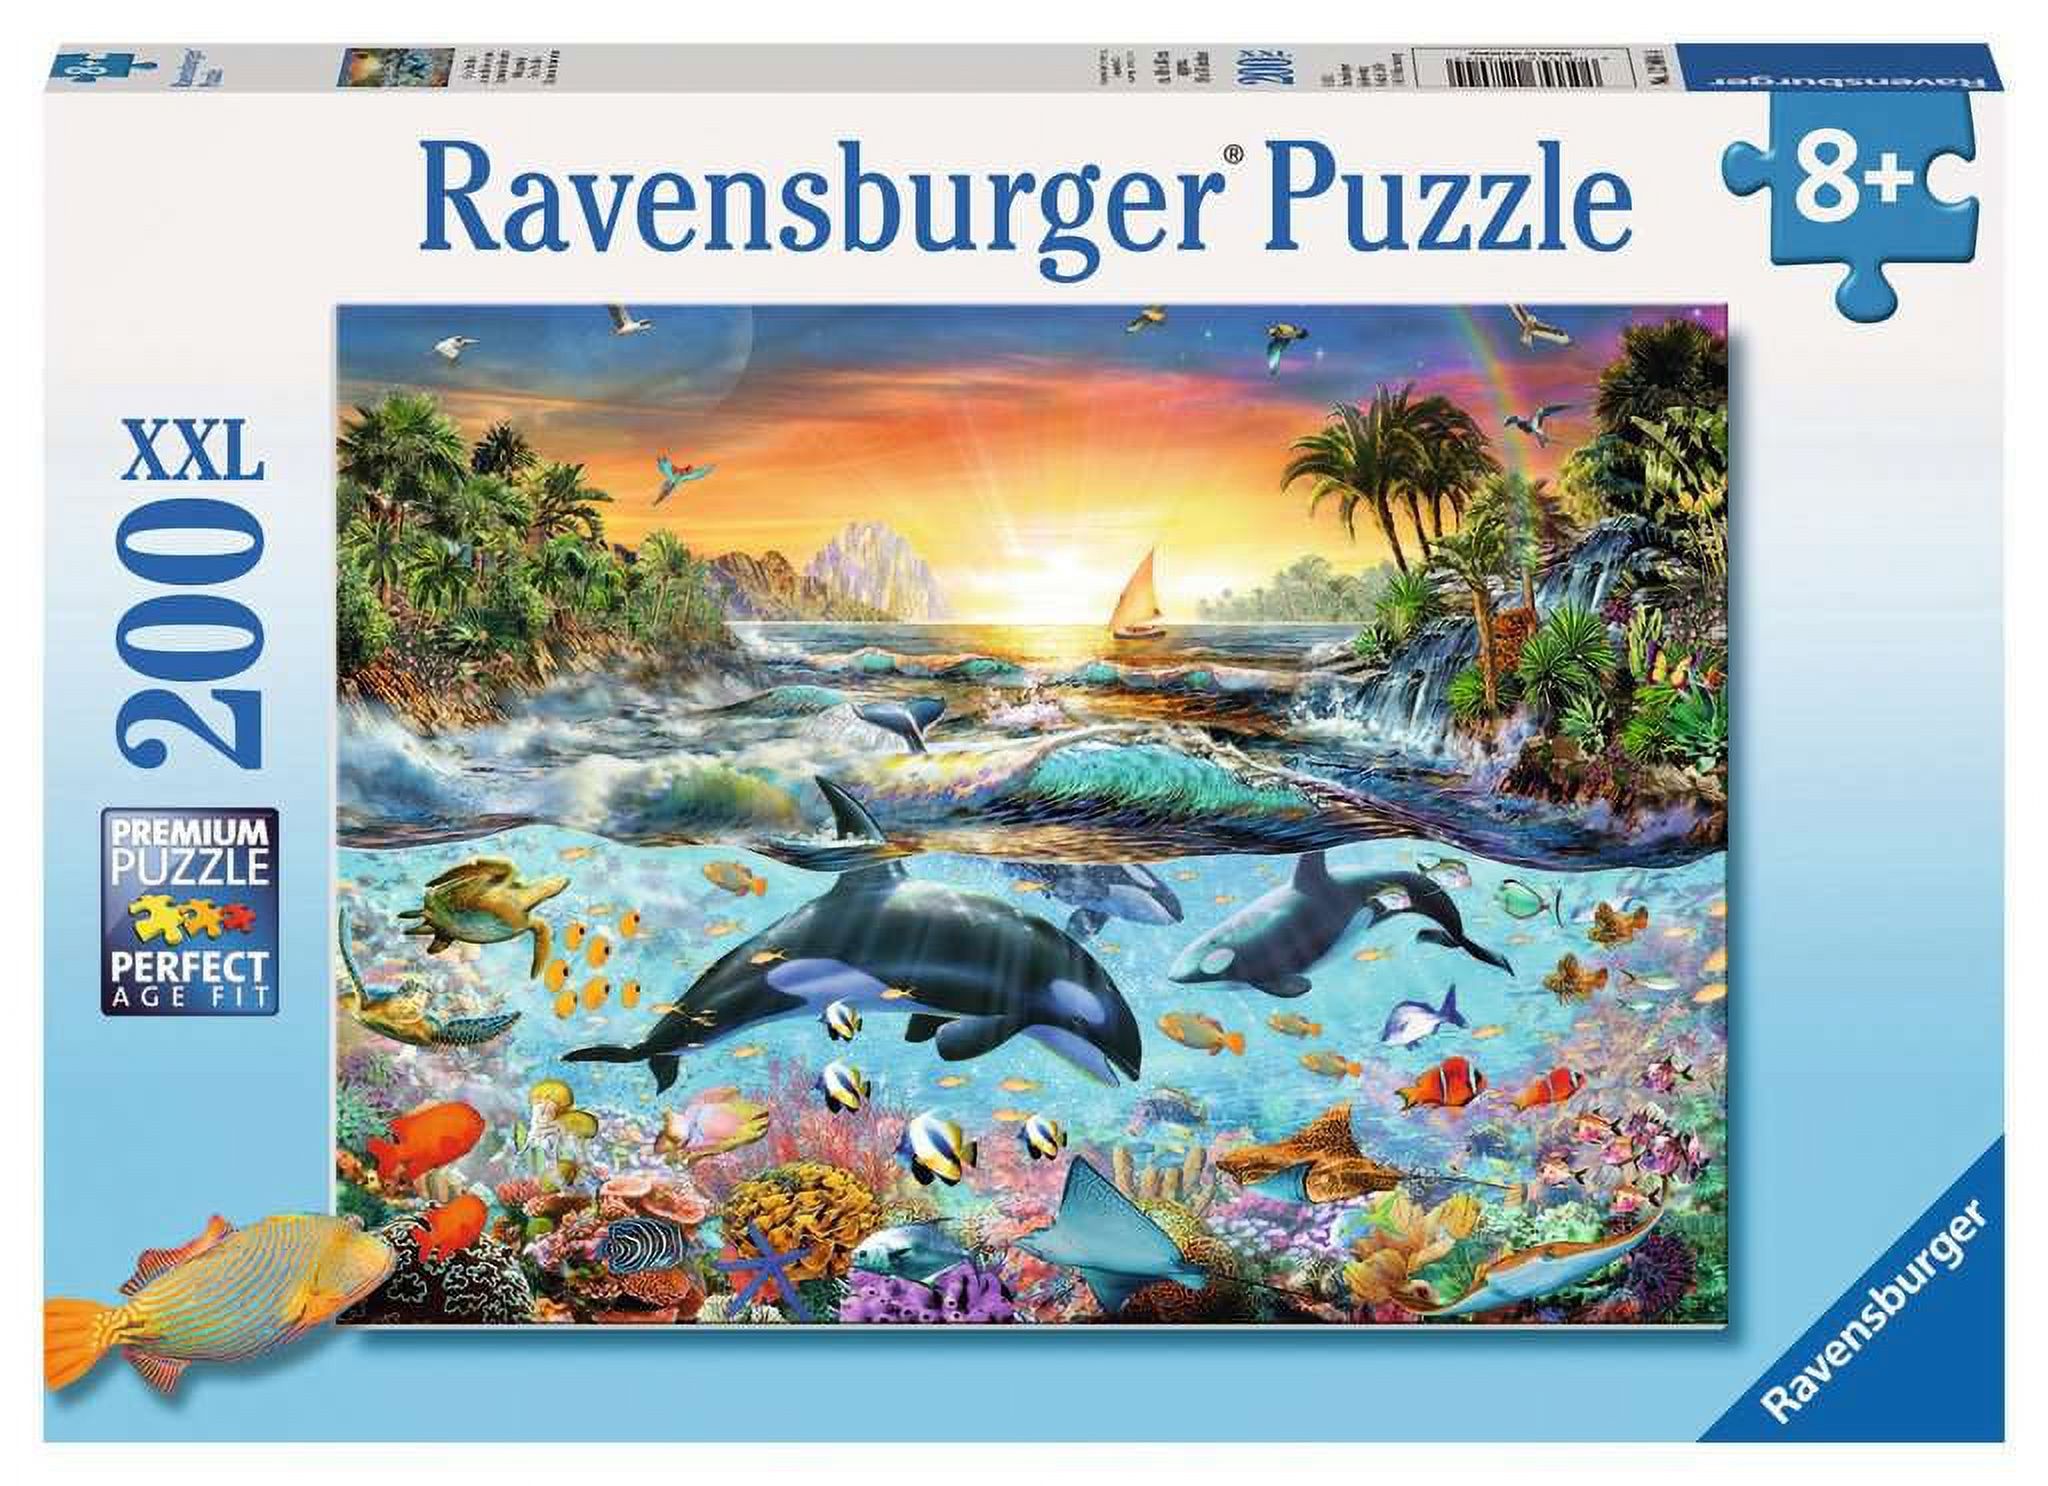 Ravensburger Orca Paradise Jigsaw Puzzle - image 1 of 2